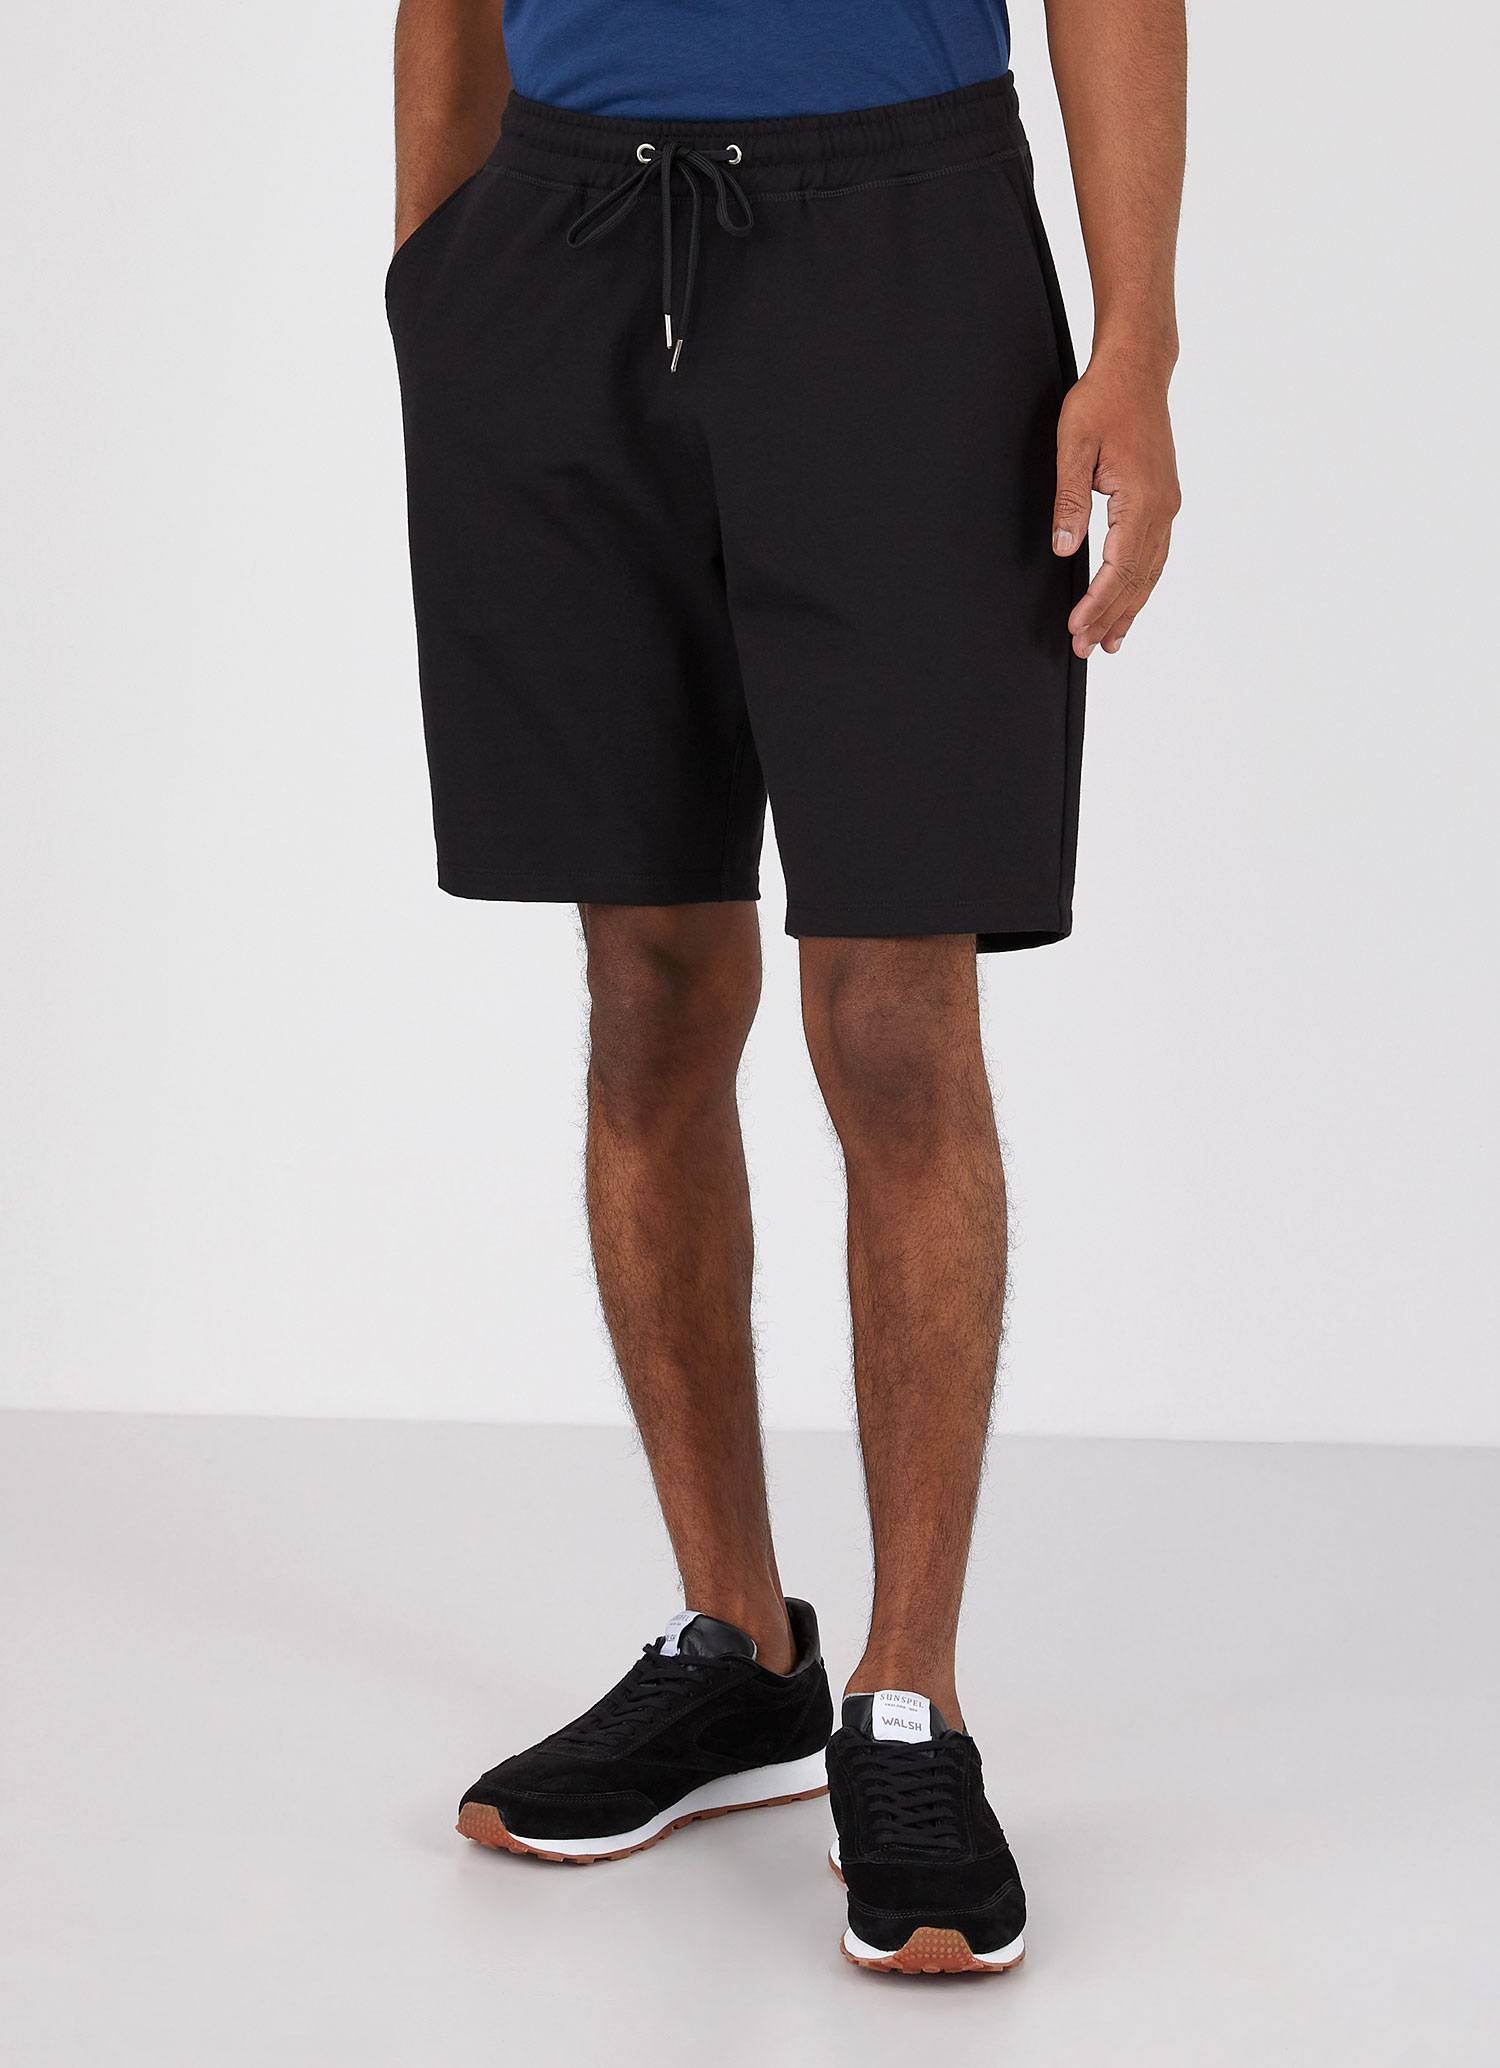 Men's DriRelease Active Shorts in Black